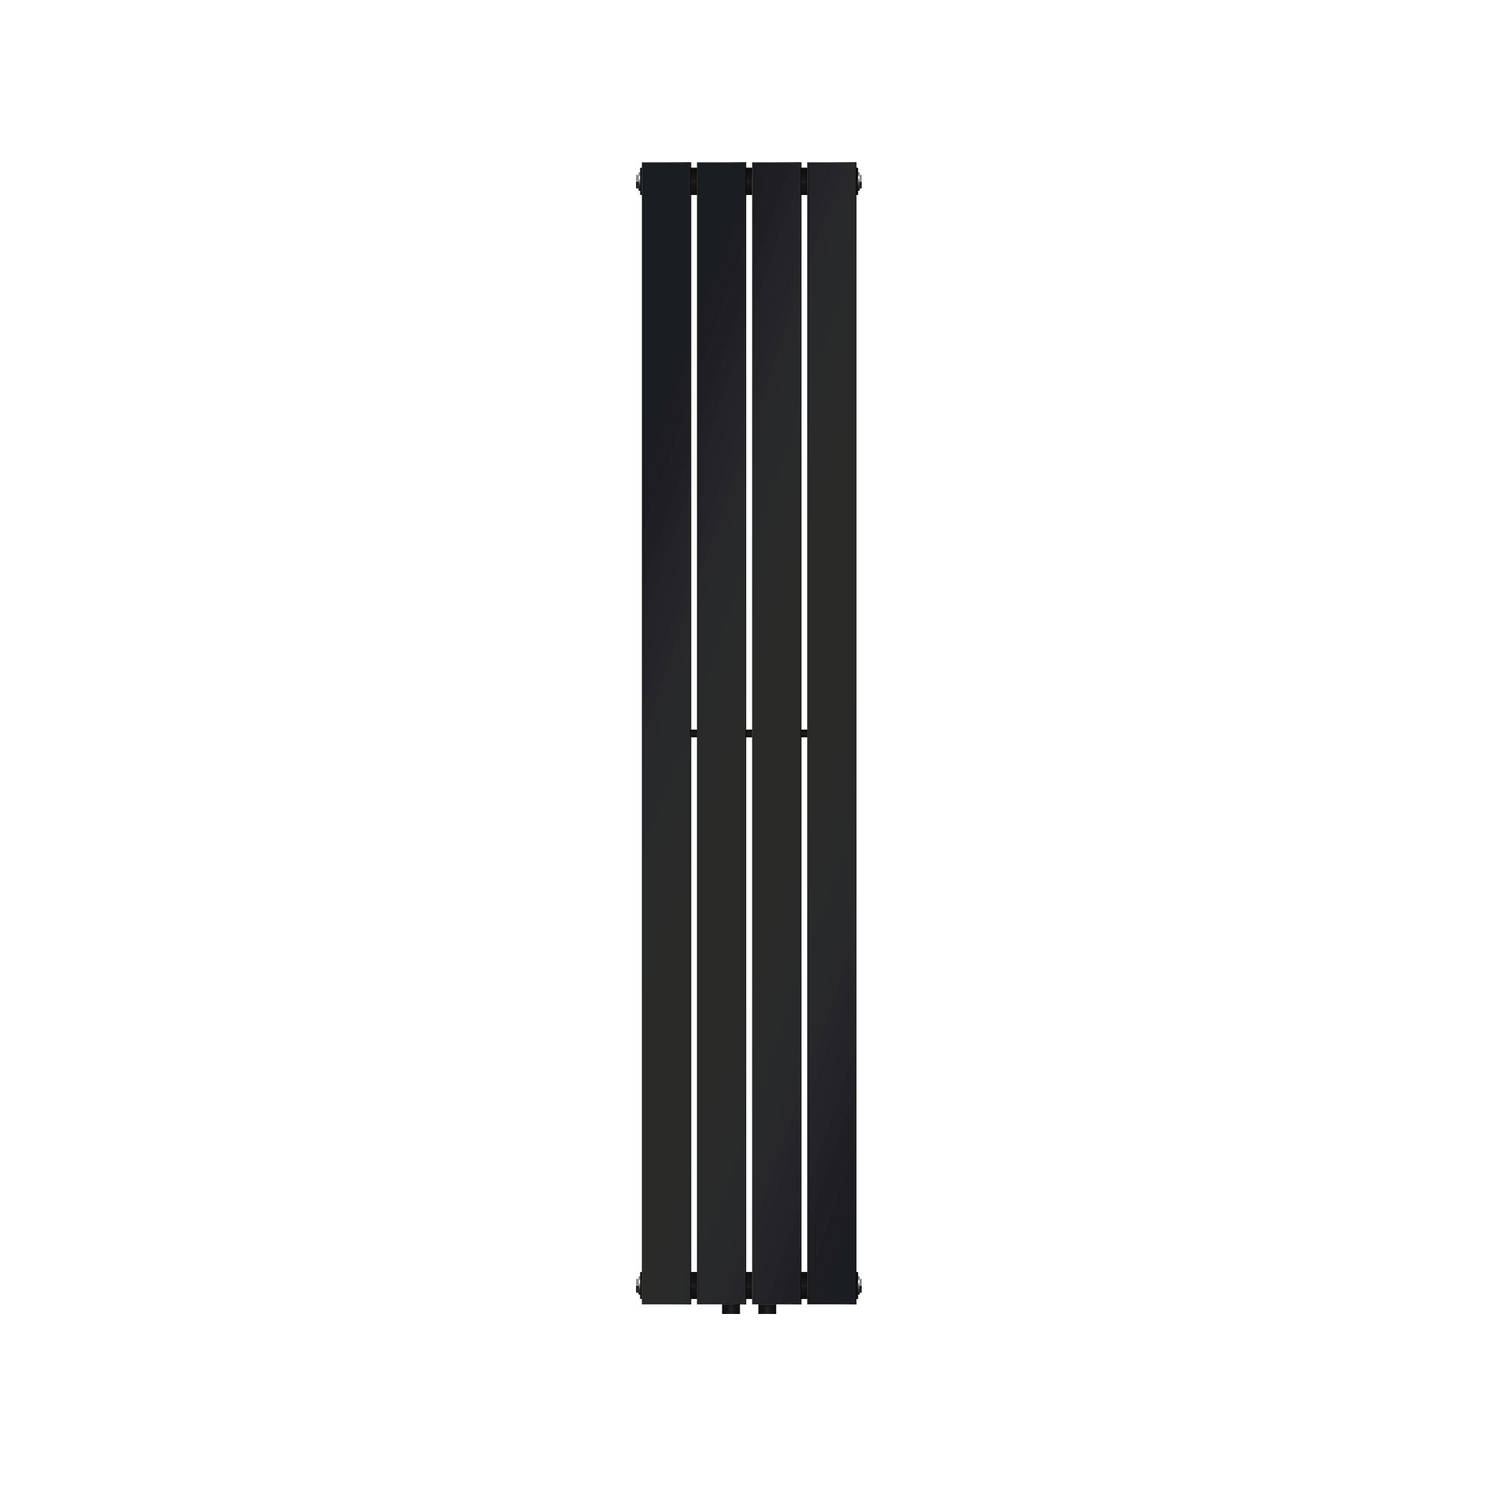 LuxeBath paneelradiator enkellaags 1600x300mm zwart mat, design badkamerradiator middenaansluiting badkamer, montageset